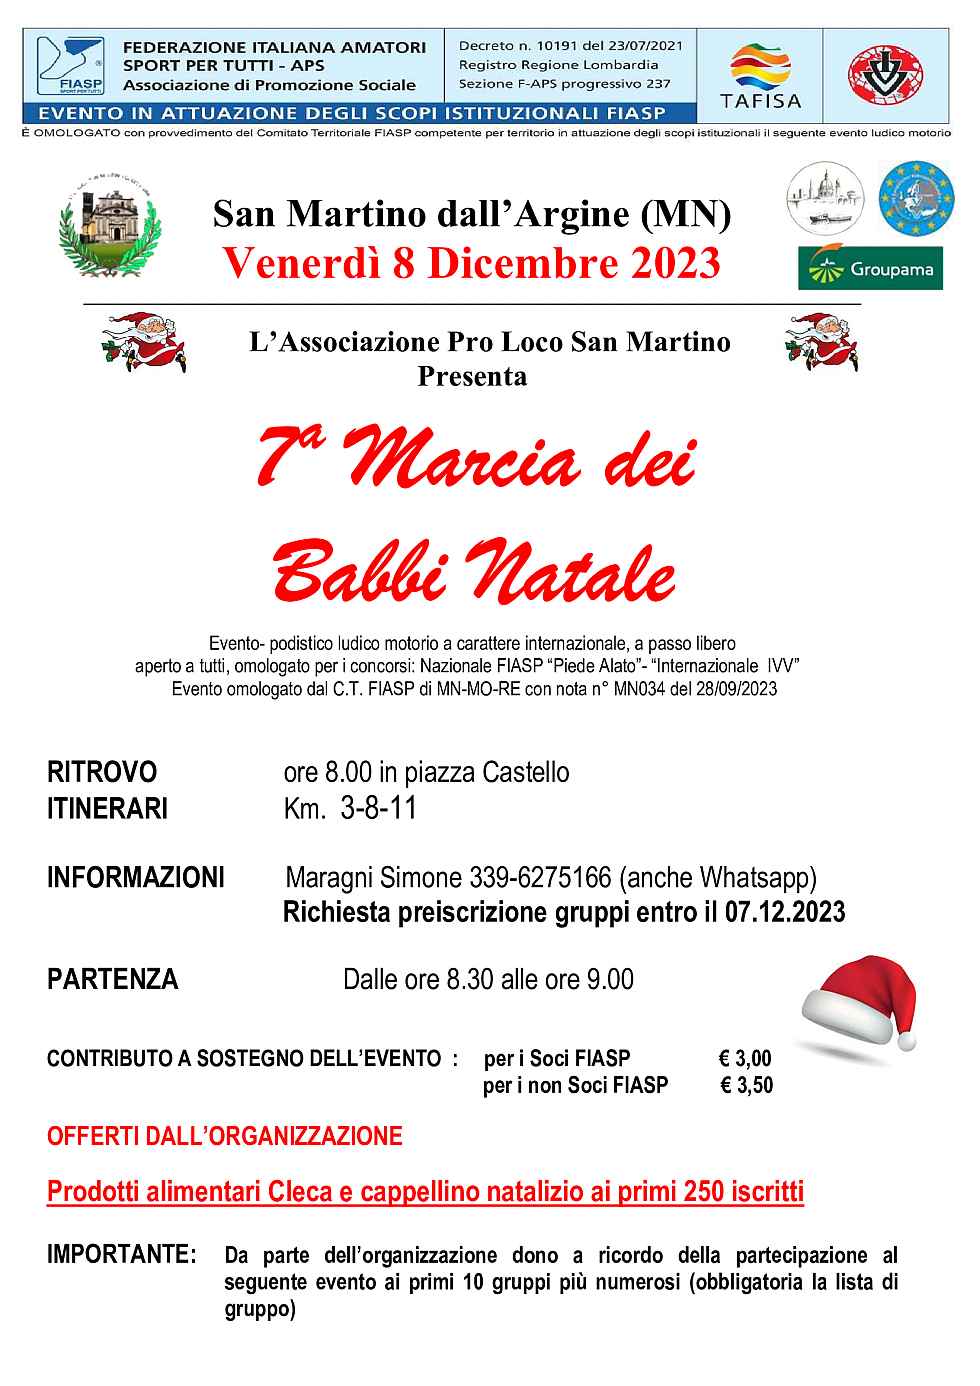 San Martino dall'Argine (MN)
"6^ Marcia dei Babbi Natale"
8 Dicembre 2022